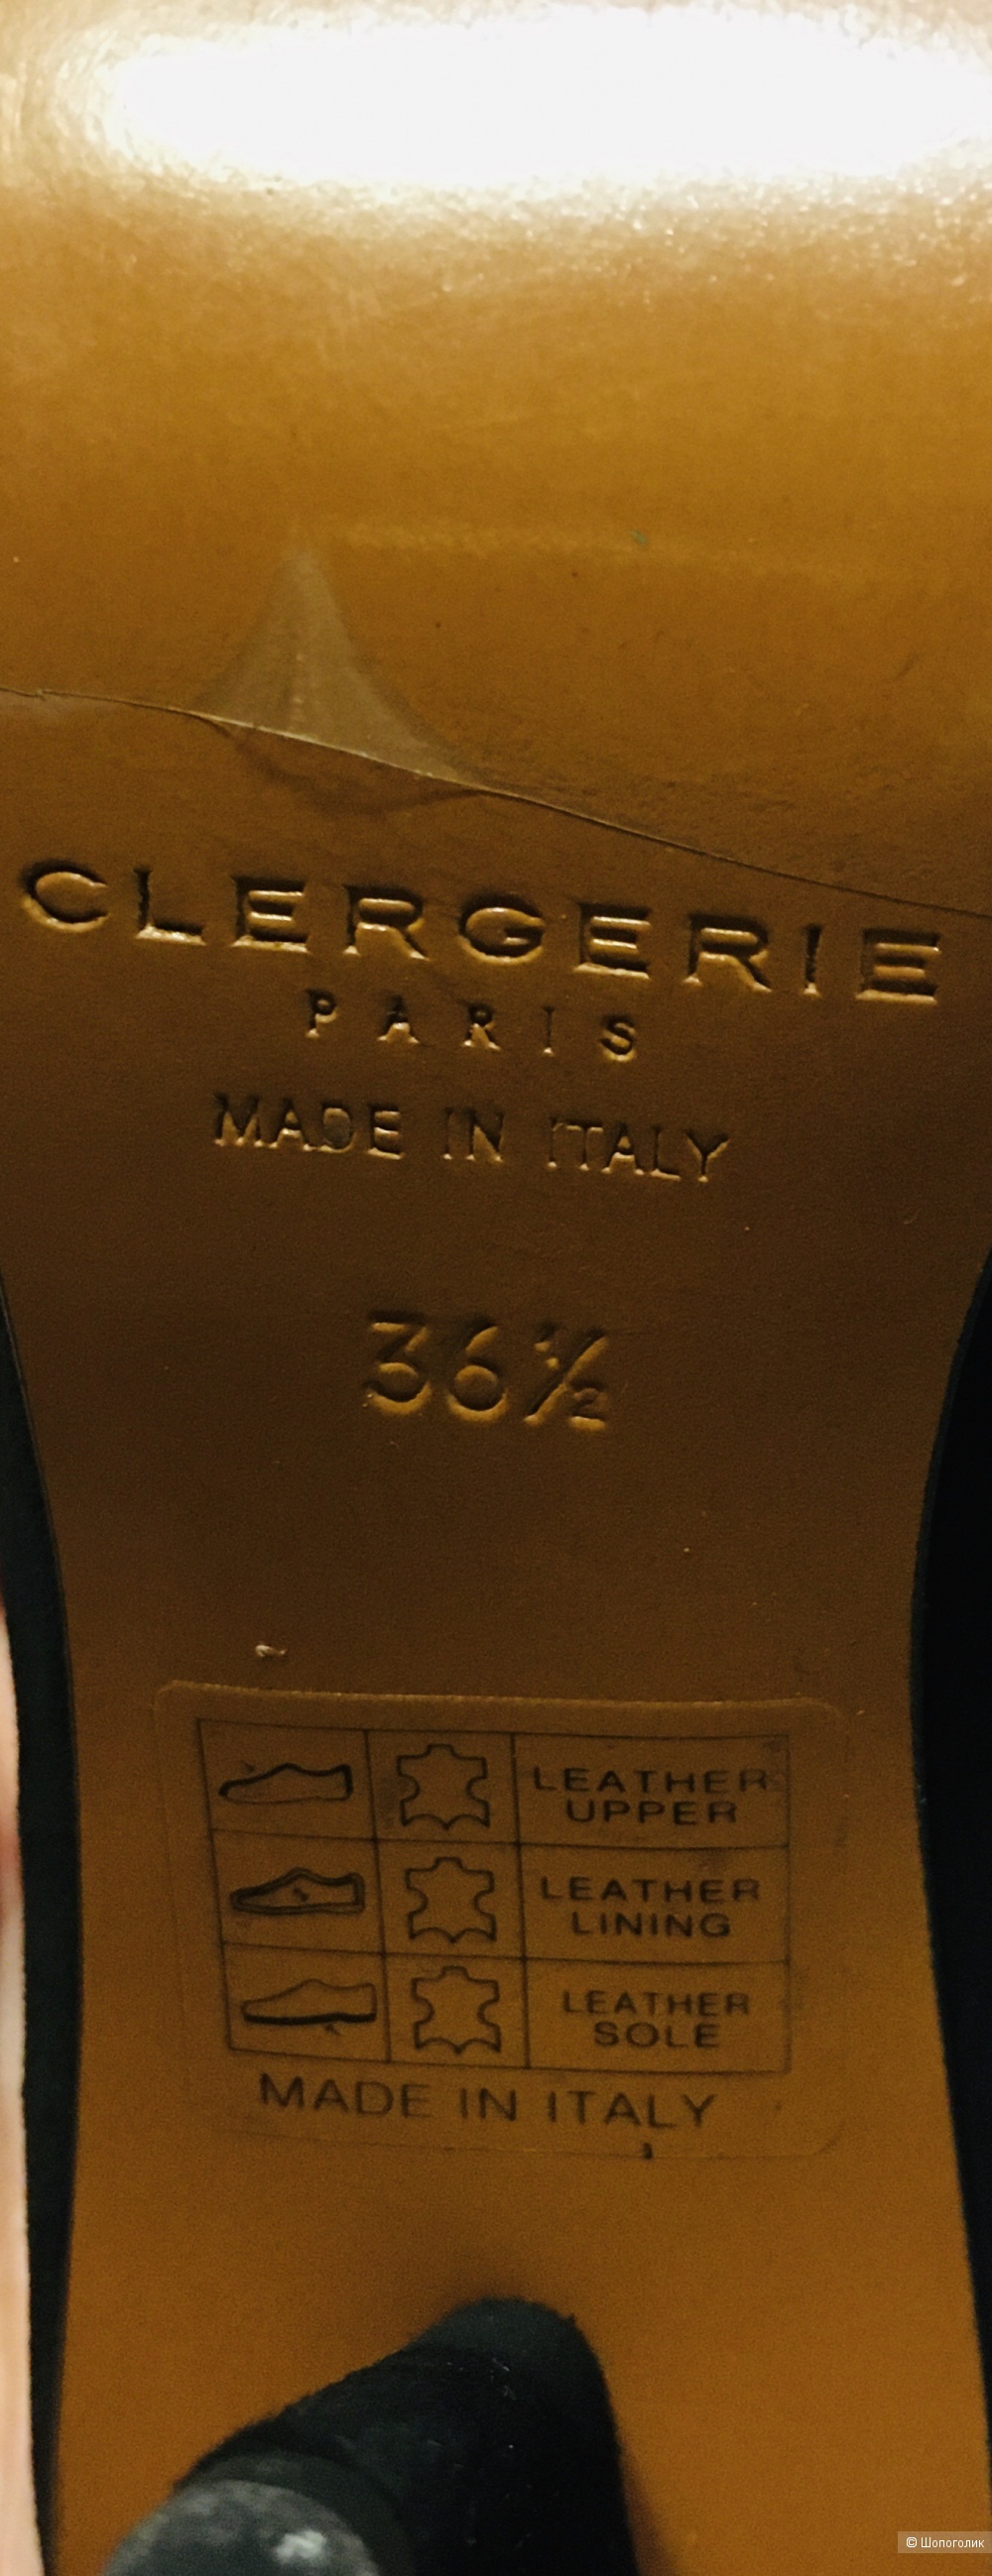 Мюли на каблуке Clergerie, размер 36-36,5